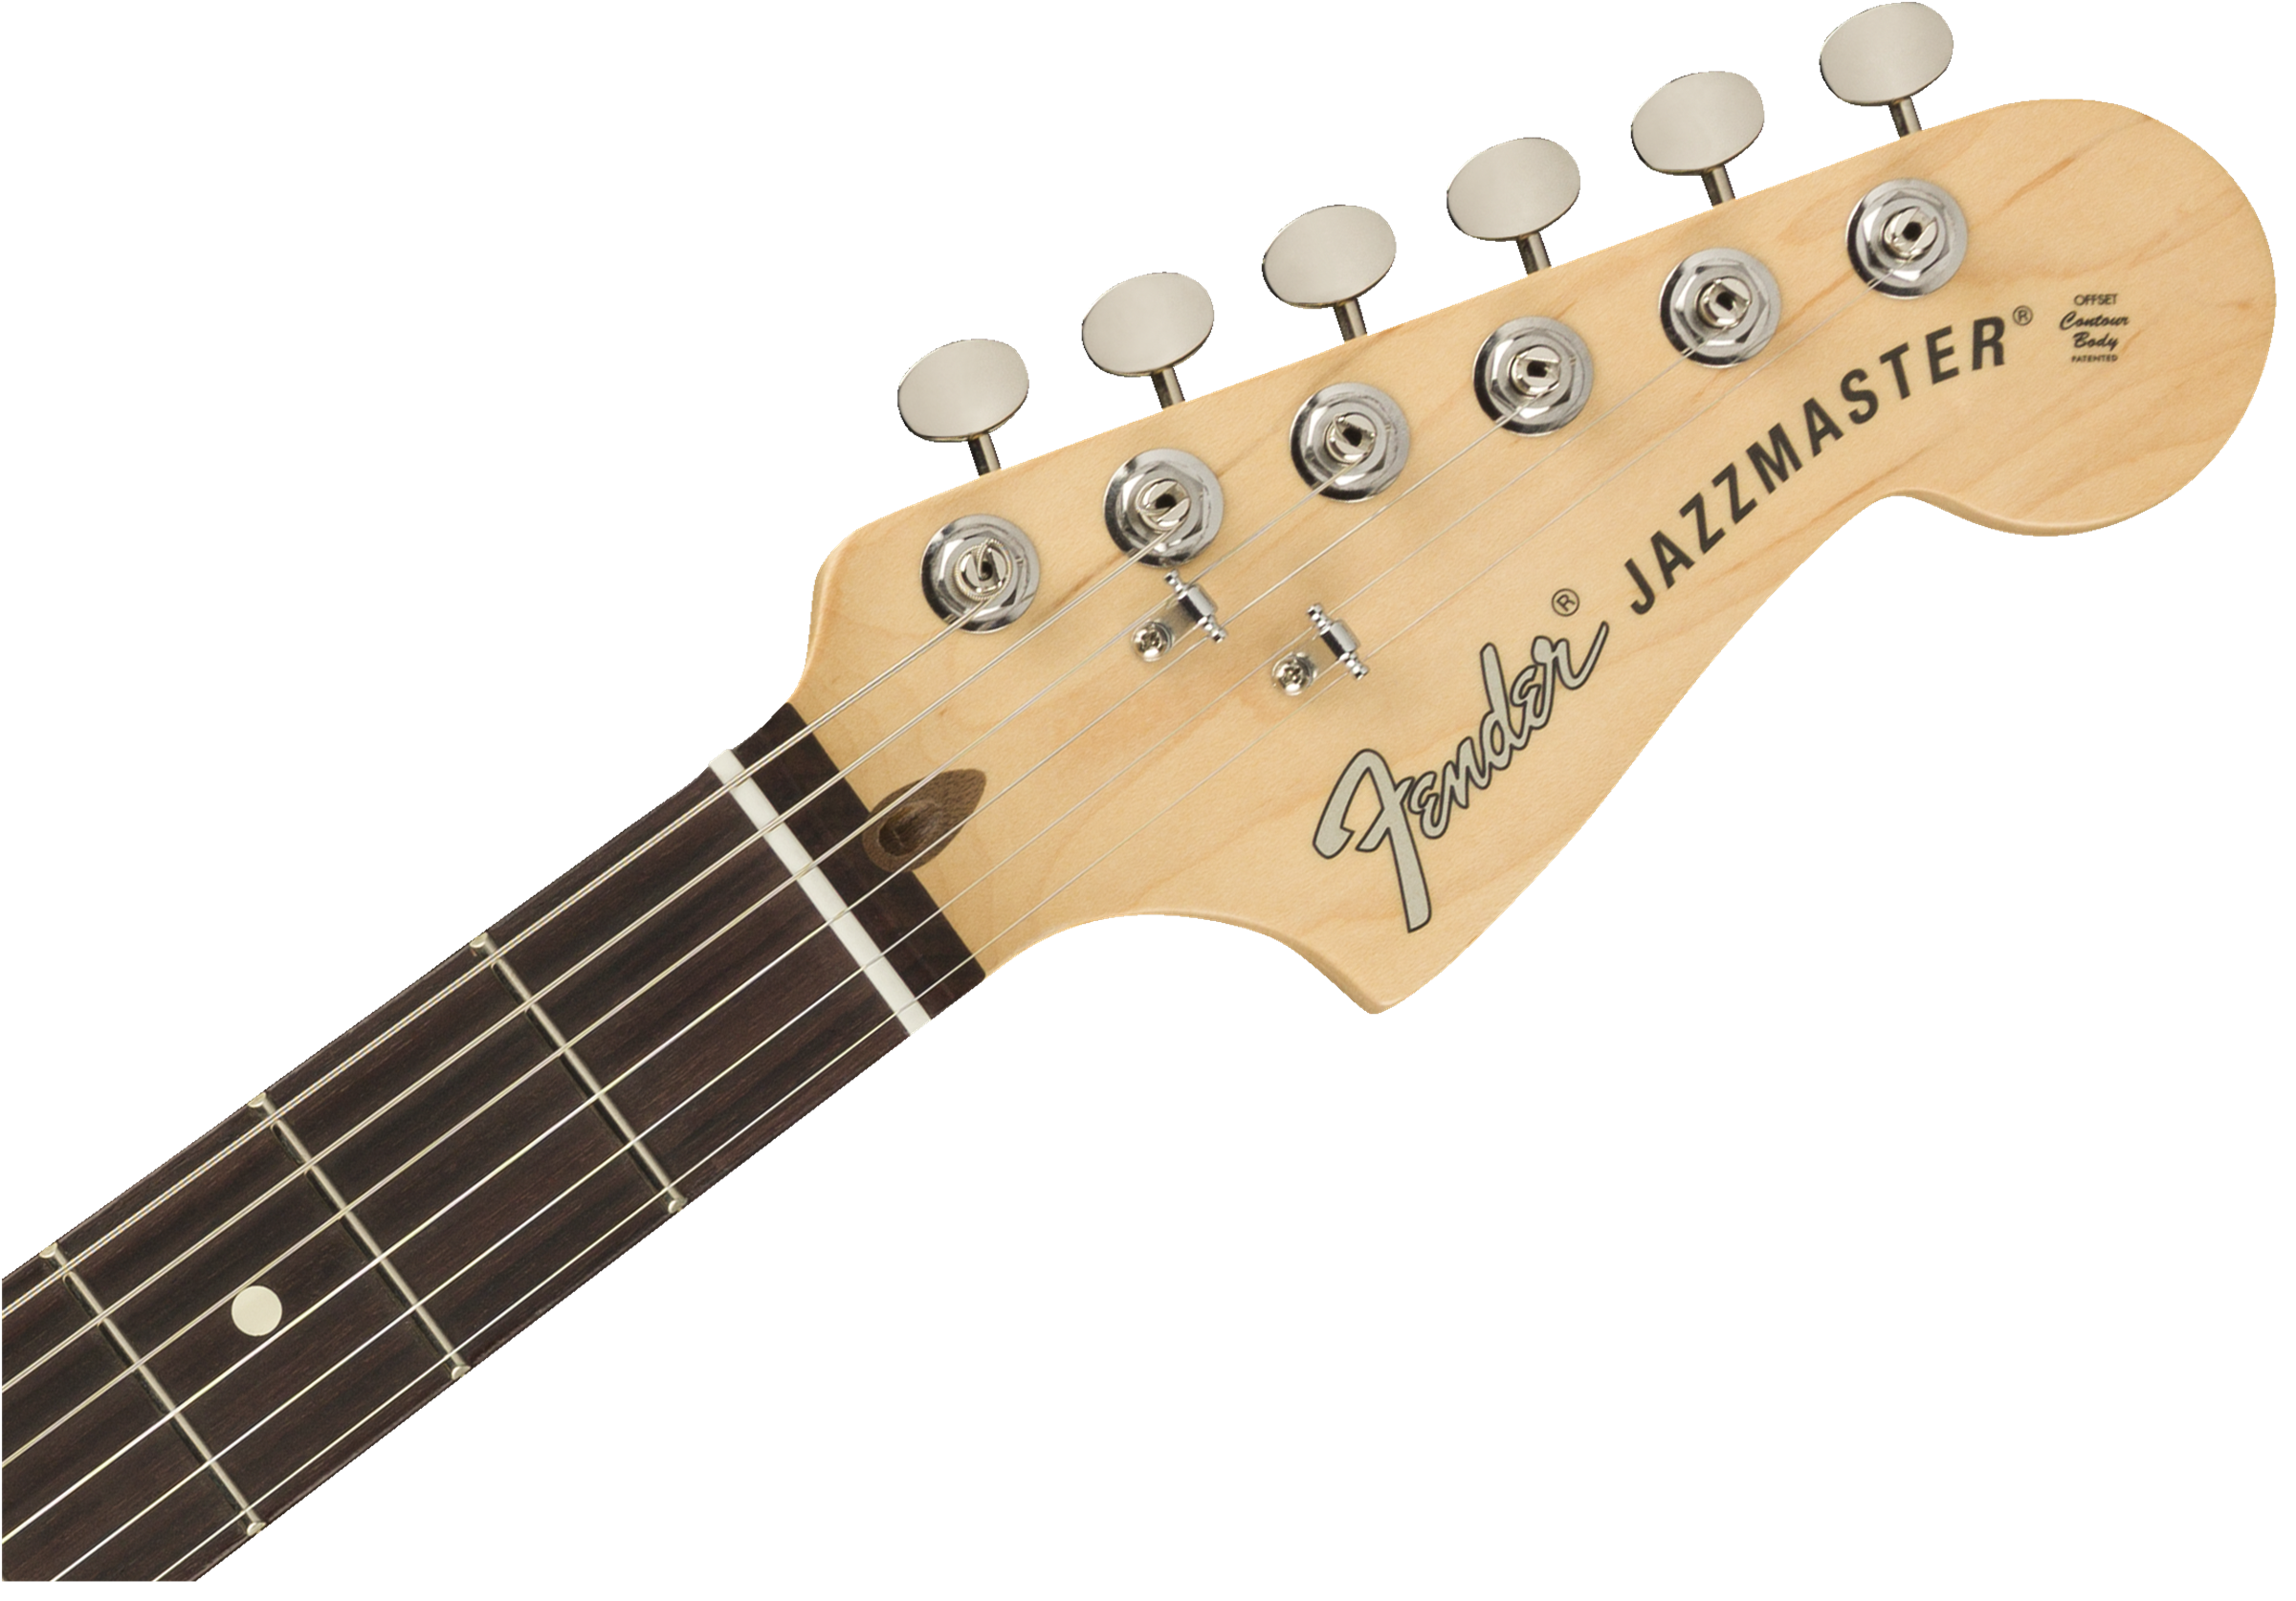 Fender American Performer Jazzmaster Rosewood Fingerboard - Vintage White 0115210341